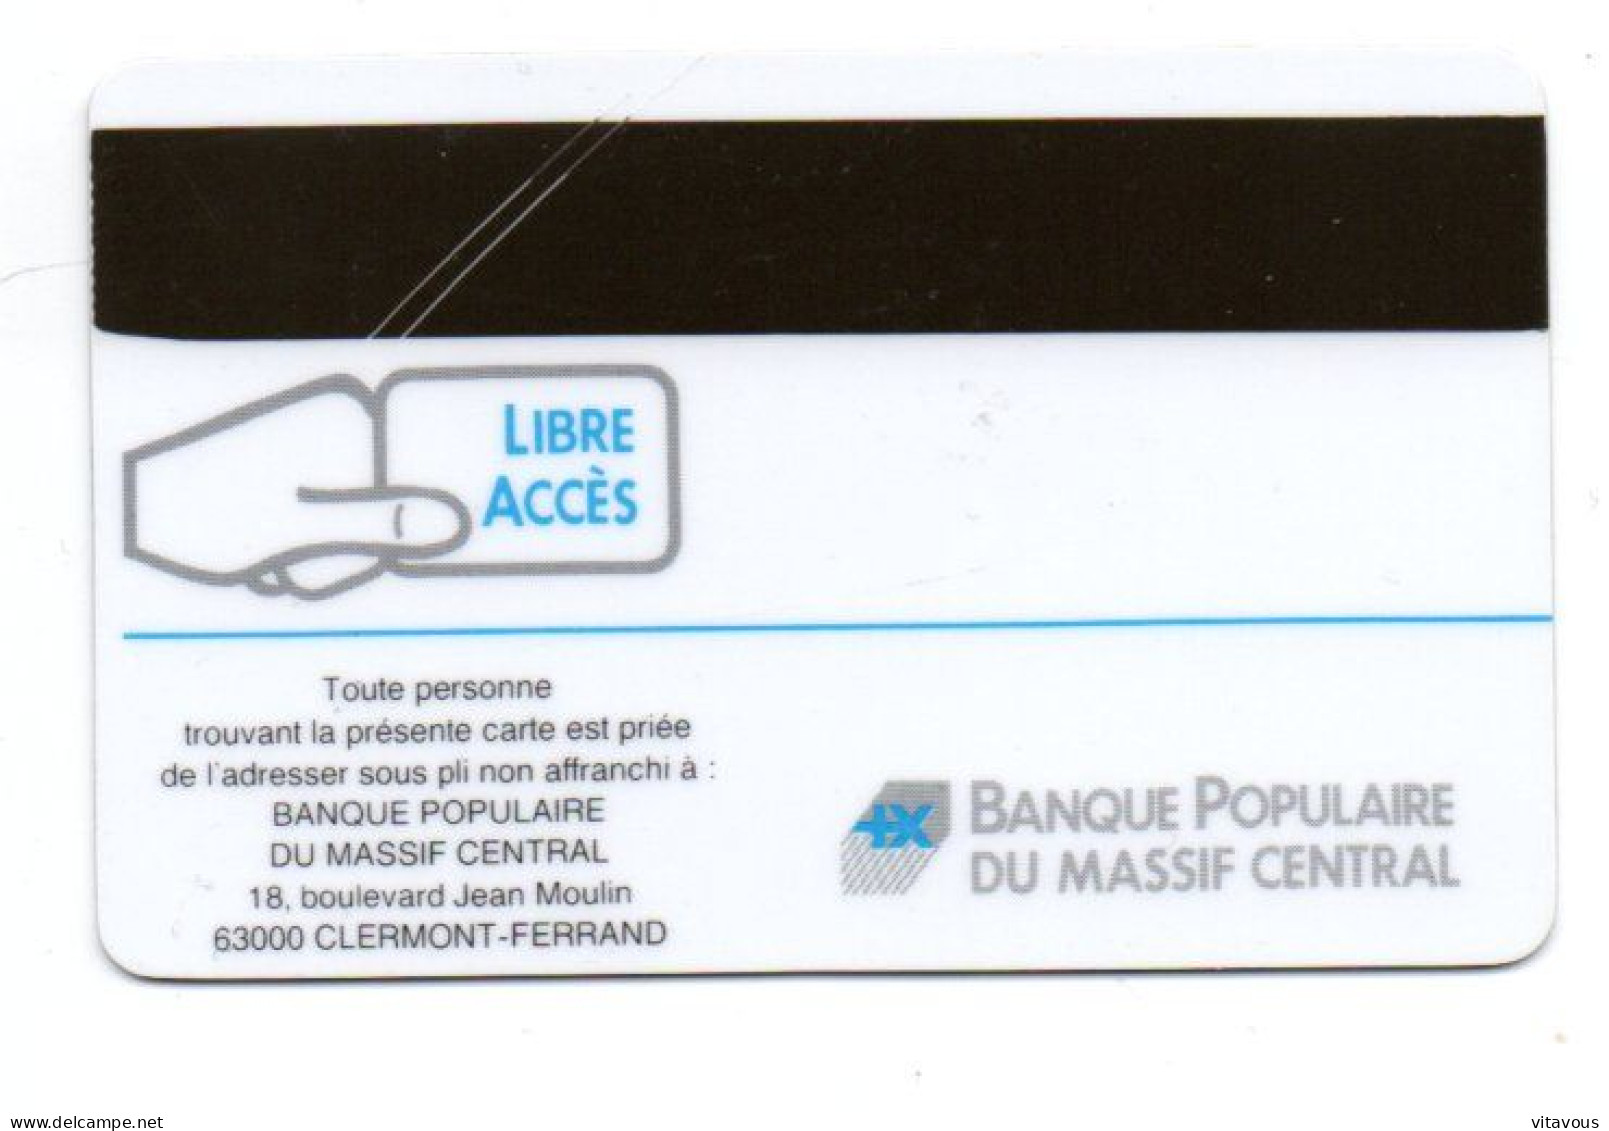 Carte Libre Accès Banque Bank FRANCE Card Karte (R 816) - Cartes Bancaires Jetables